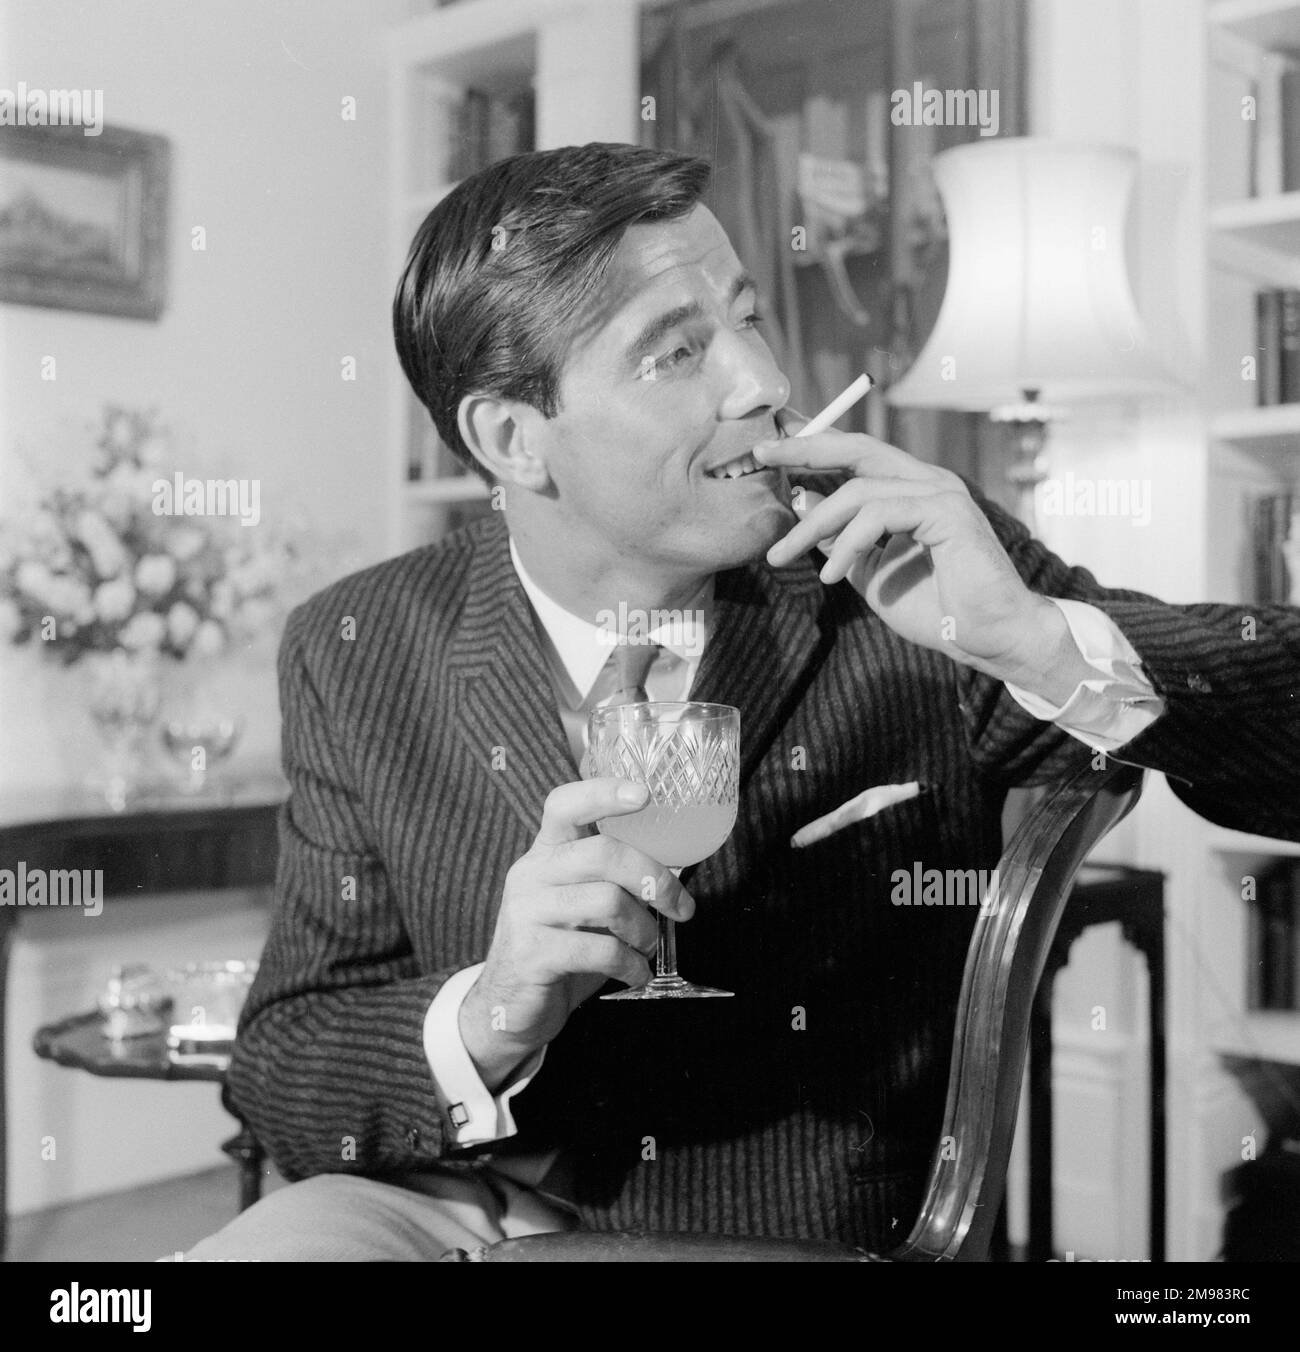 Advertisement for Life Cigarettes -- männliches Model (Peter Anthony), das sich in einer luxuriösen Inneneinrichtung posiert. Stockfoto